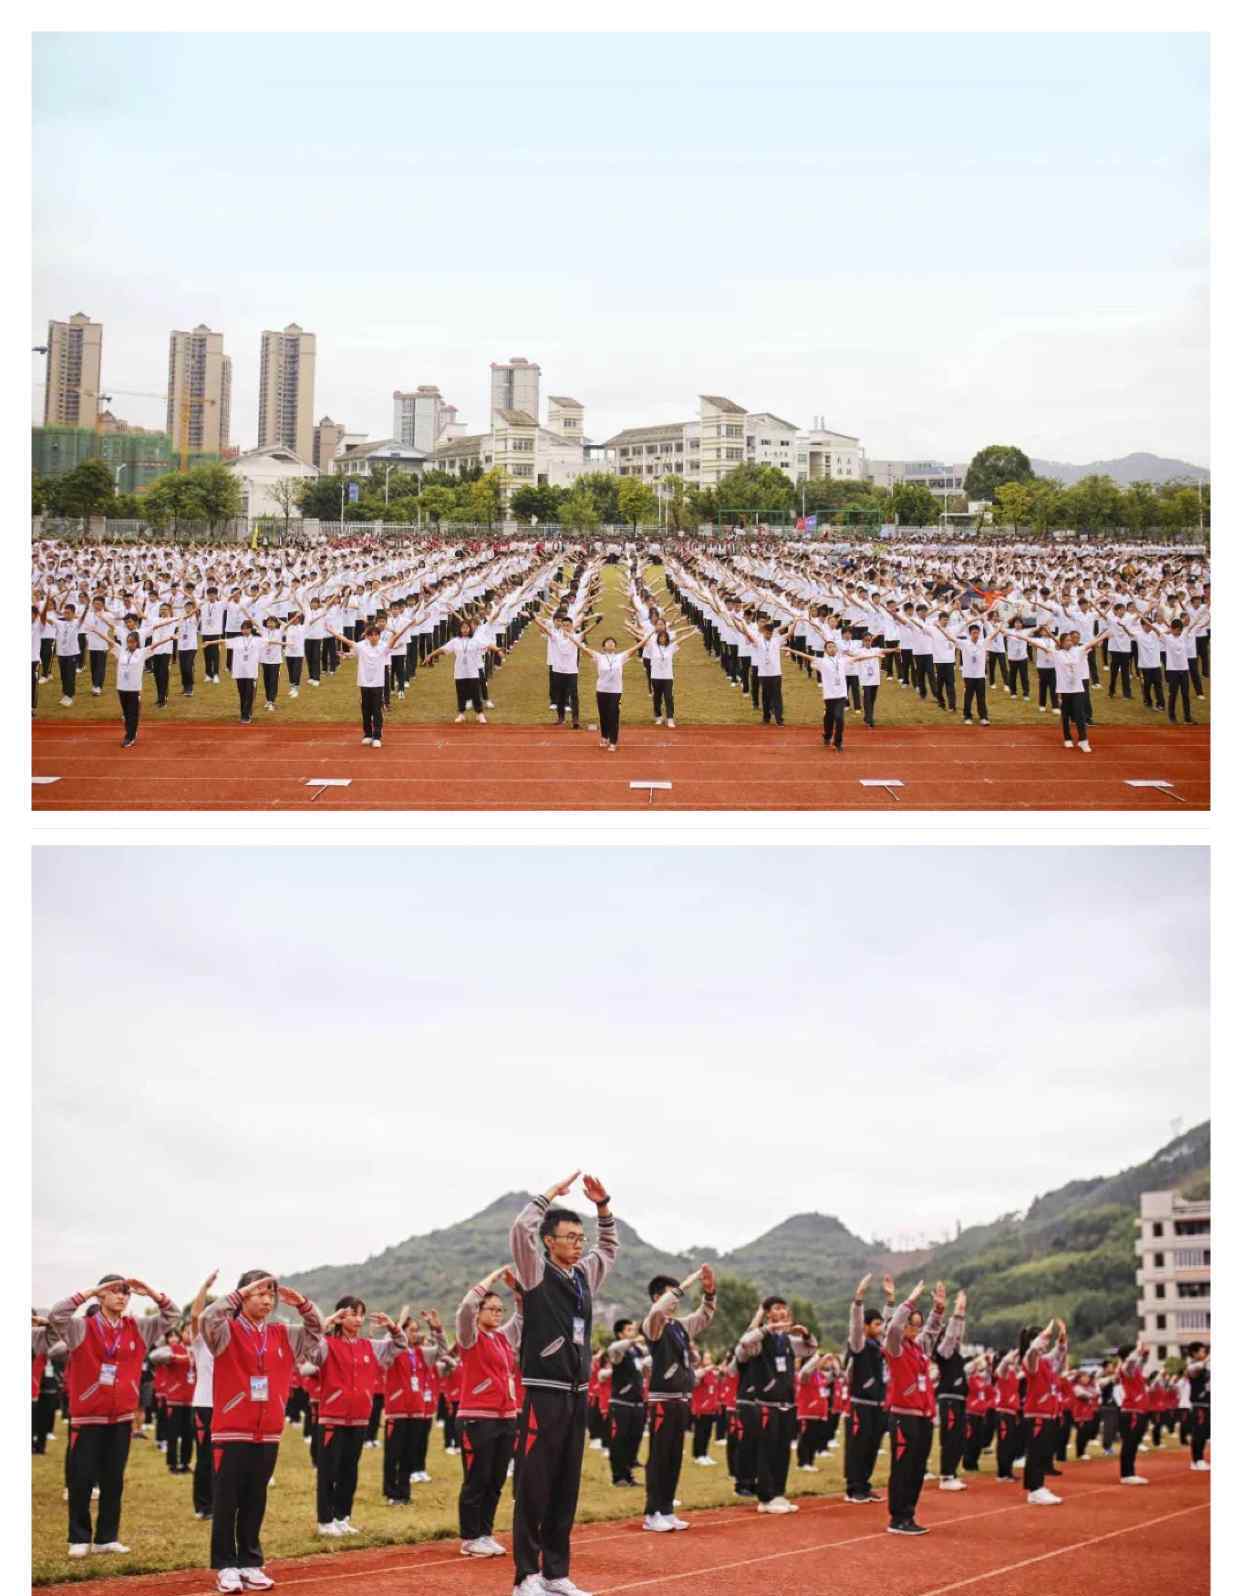 柳州一中 运动点燃激情、校园别样风采—柳州市第一中学第七十五届田径运动会